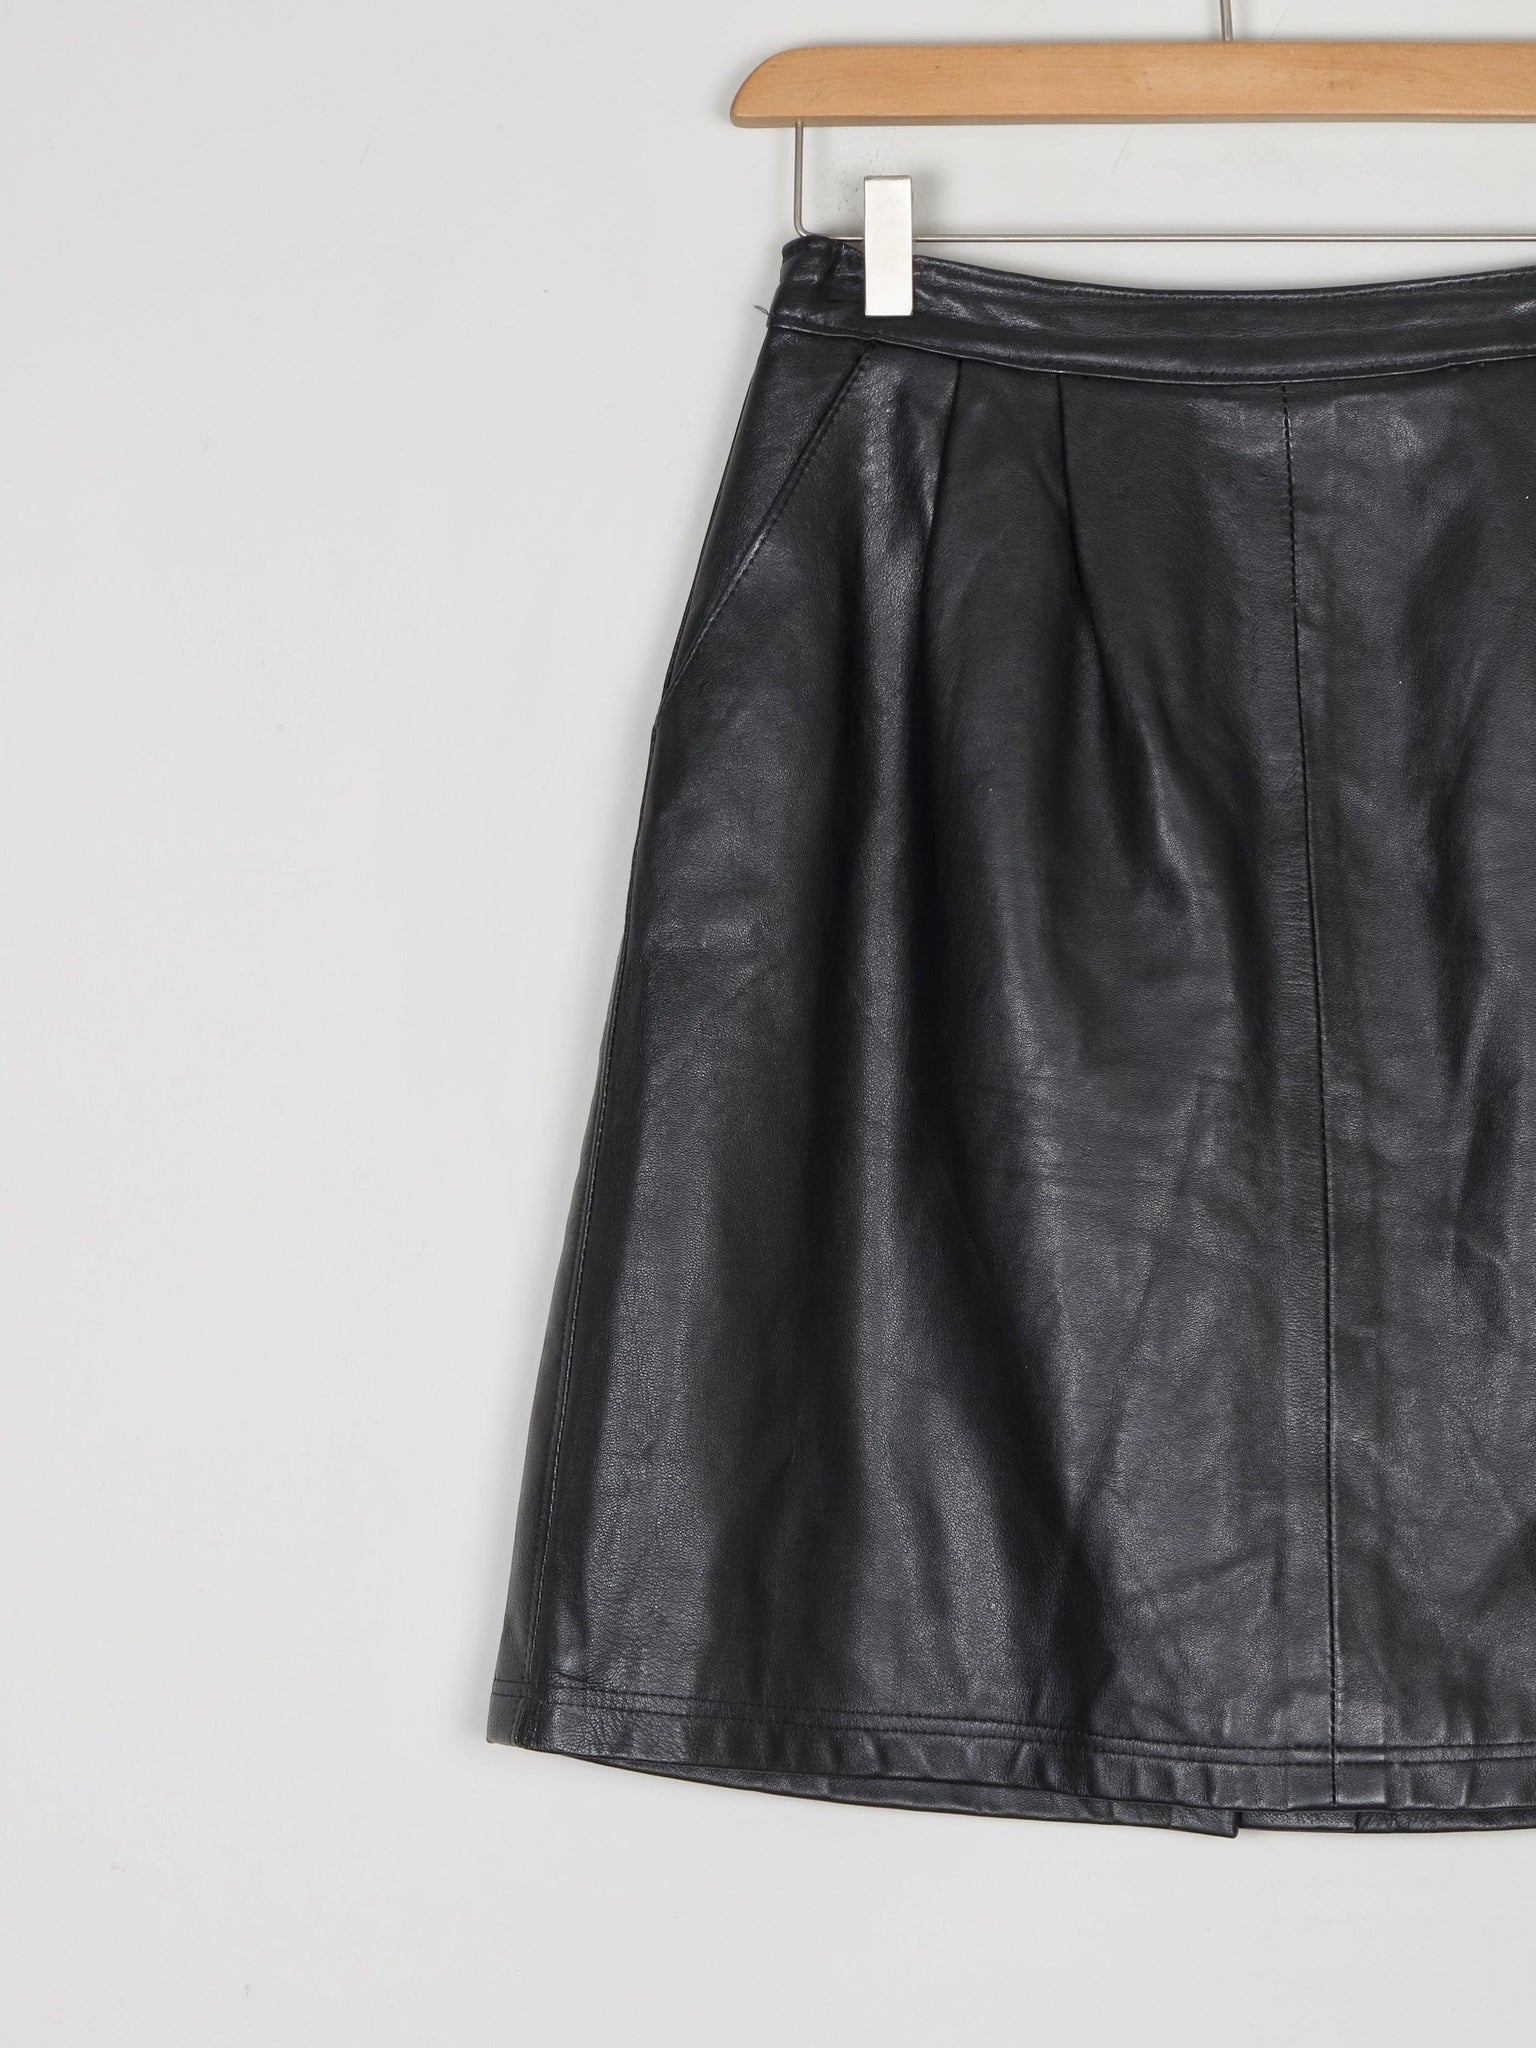 Black Leather Short Vintage Skirt 26" 6/8 - The Harlequin